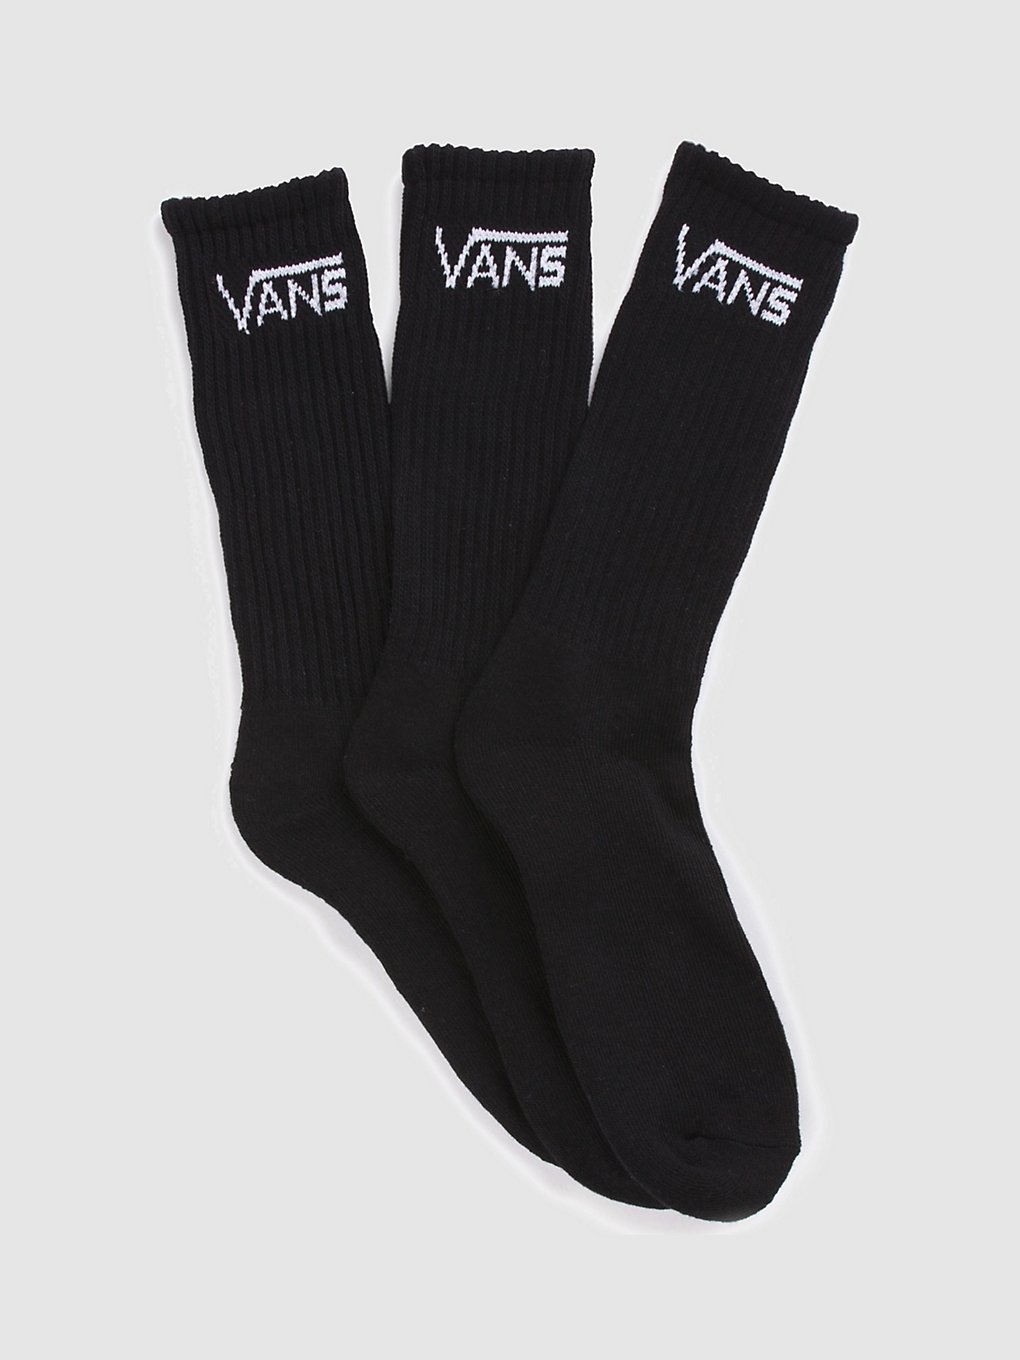 Vans Classic Crew (9.5-13) Socken black kaufen